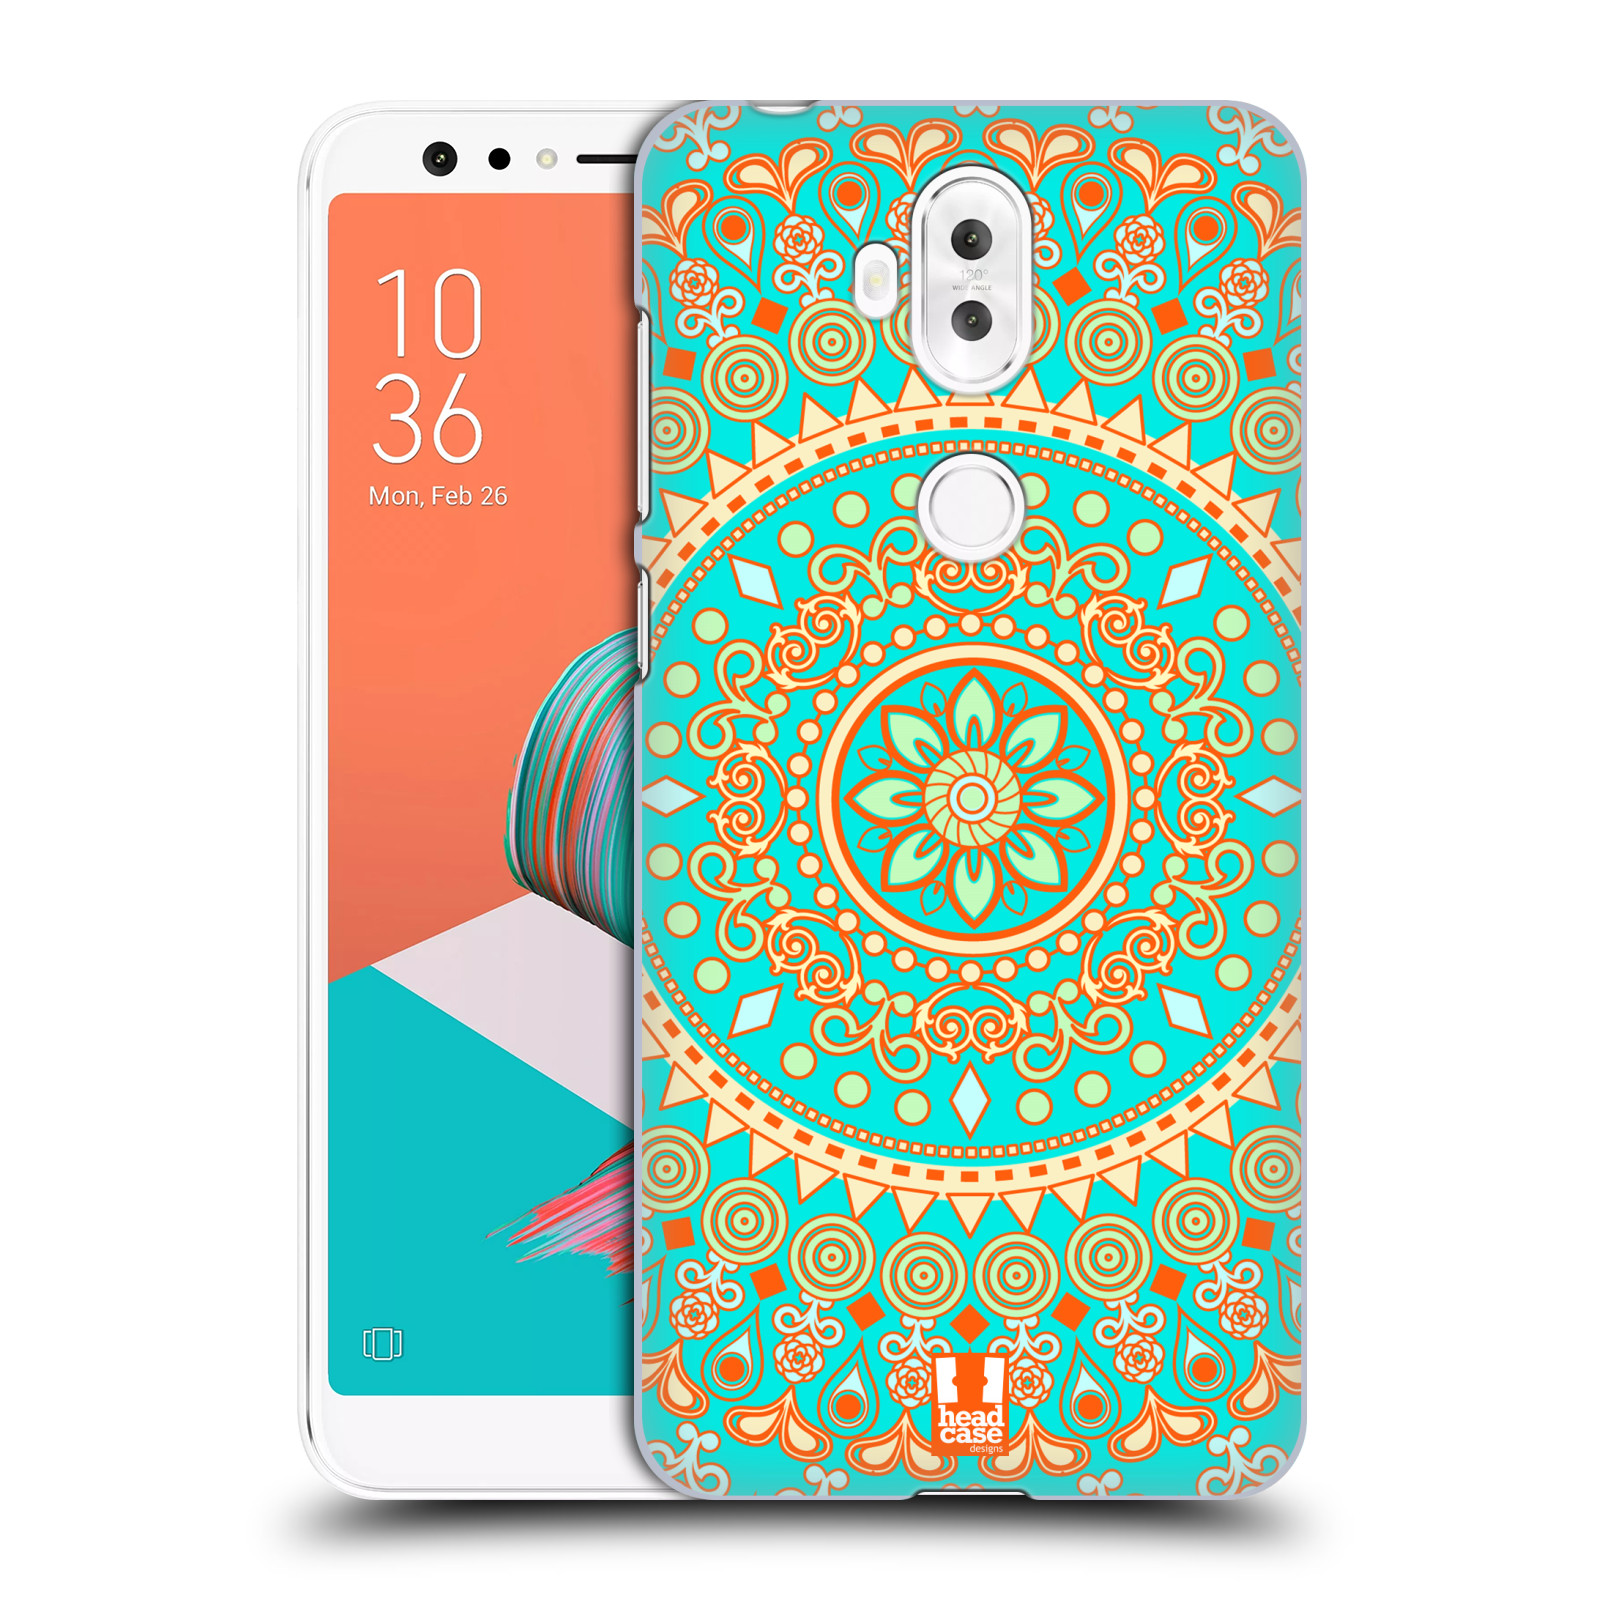 HEAD CASE plastový obal na mobil Asus Zenfone 5 LITE ZC600KL vzor Indie Mandala slunce barevný motiv TYRKYSOVÁ, ZELENÁ